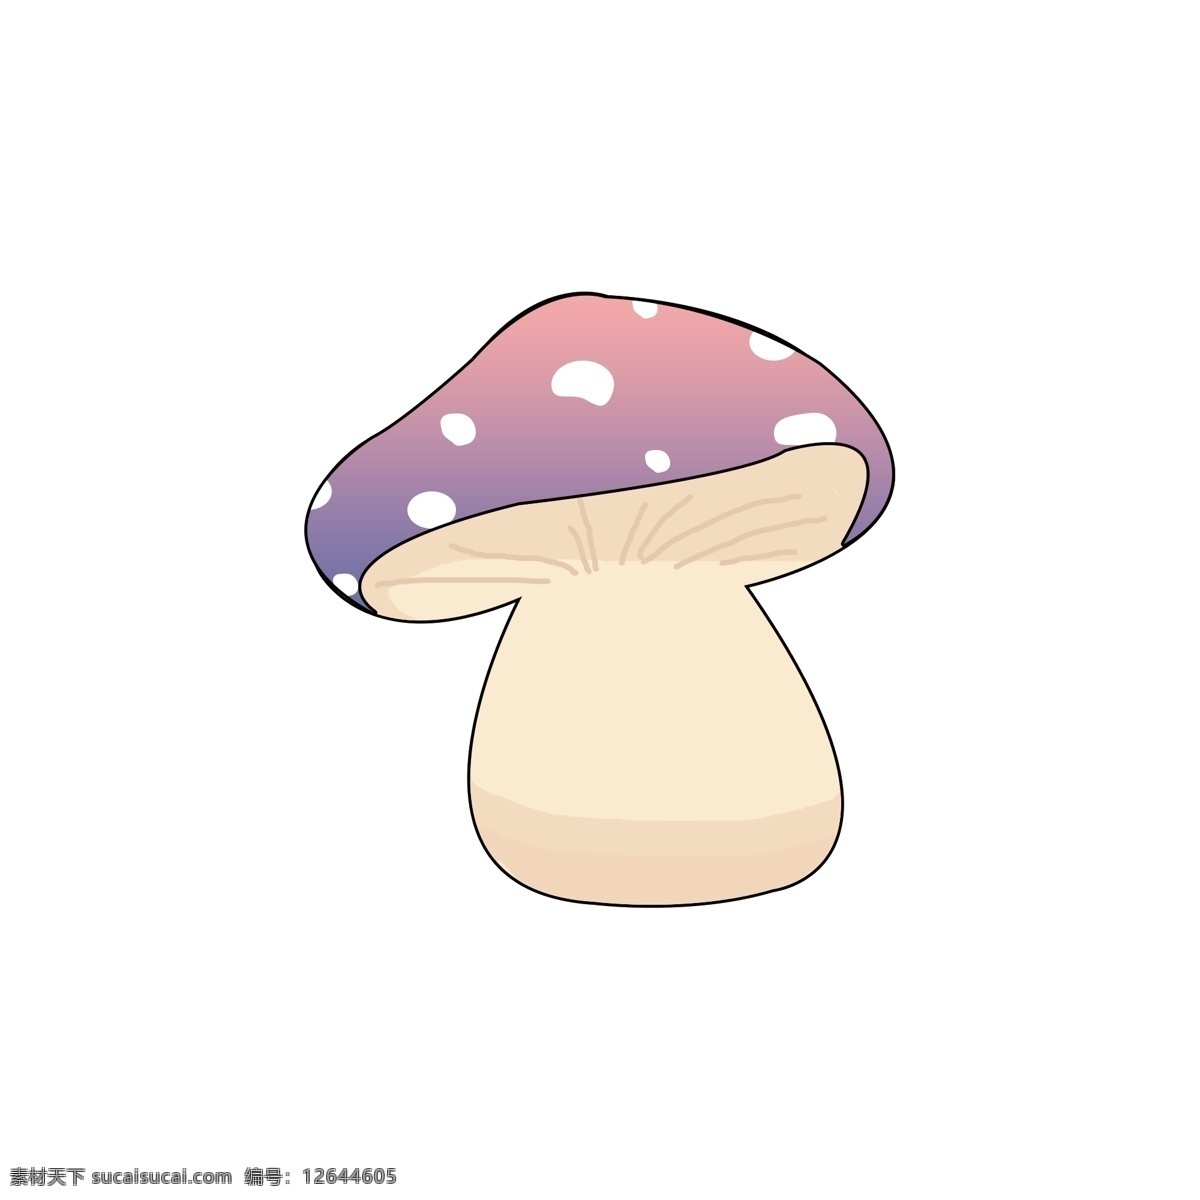 原创 手绘 卡通 蘑菇 手绘蘑菇 卡通蘑菇 彩色蘑菇